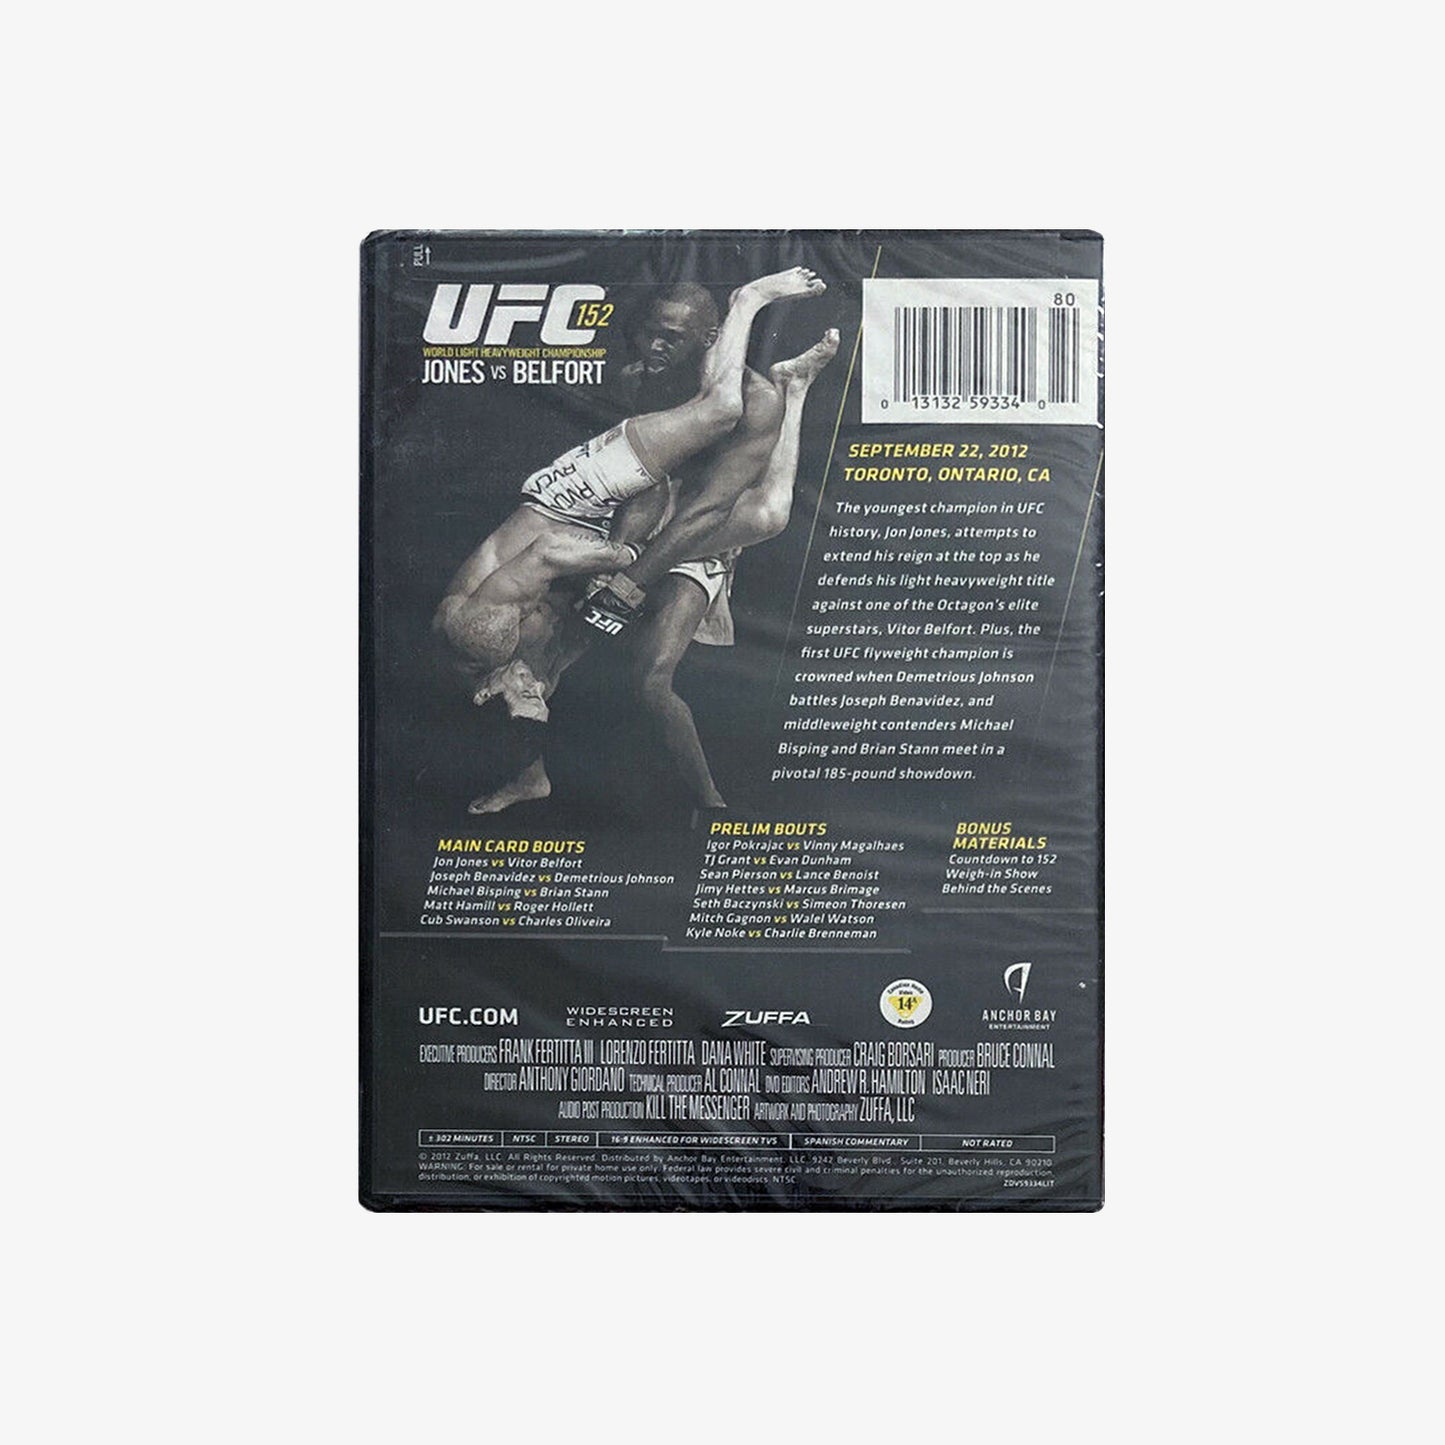 UFC 152